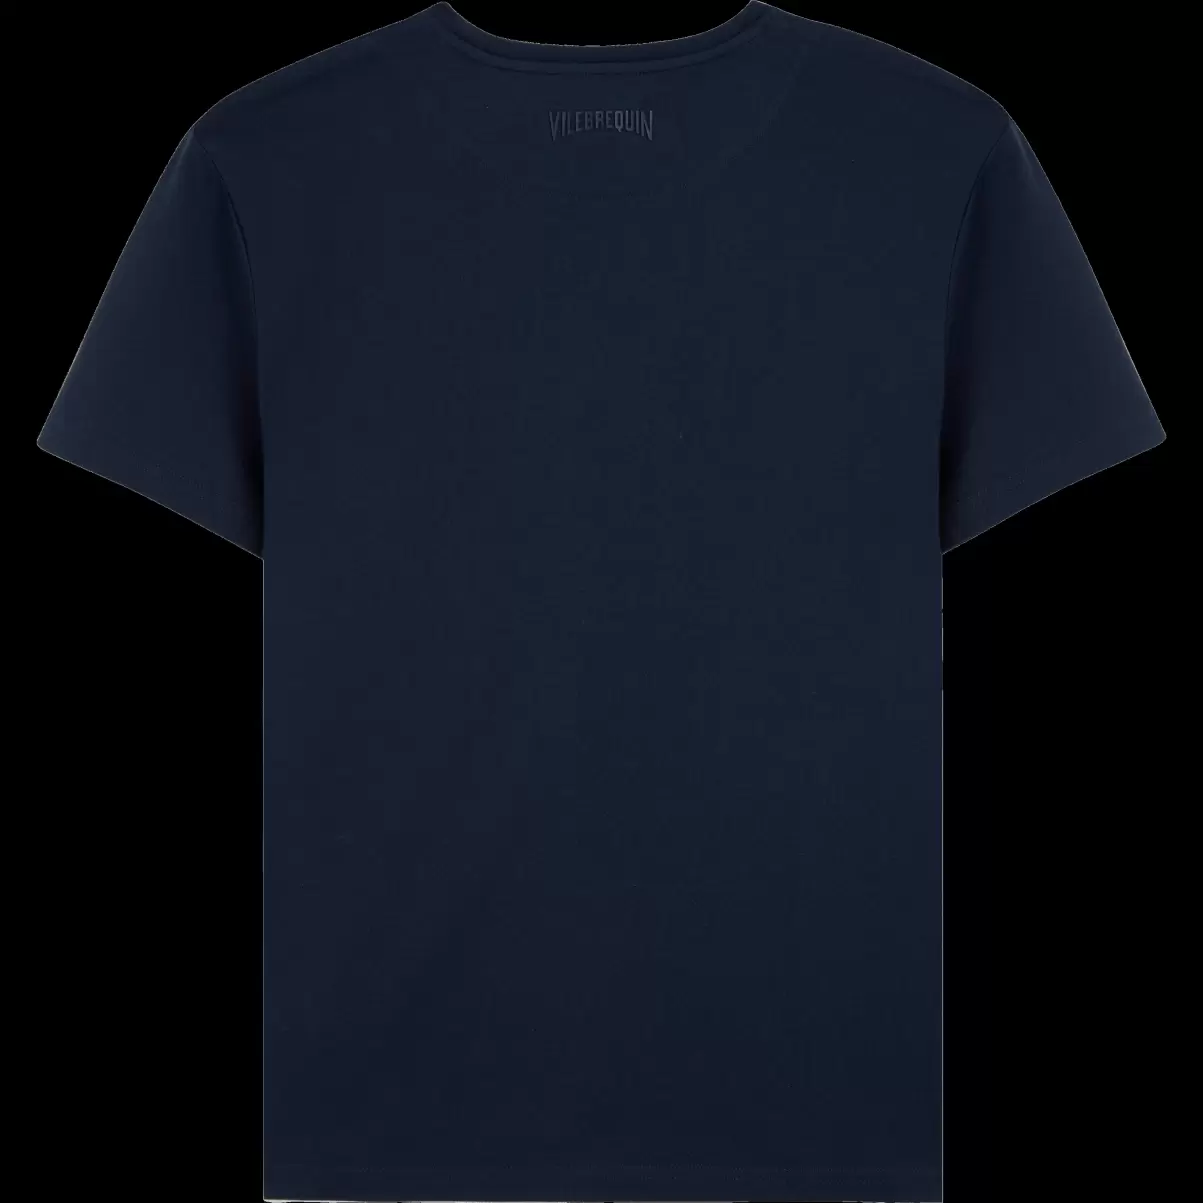 Markenidentität The Year Of The Dragon T-Shirt Aus Baumwolle Für Herren Herren Vilebrequin Vater Und Sohn Marineblau / Blau - 4